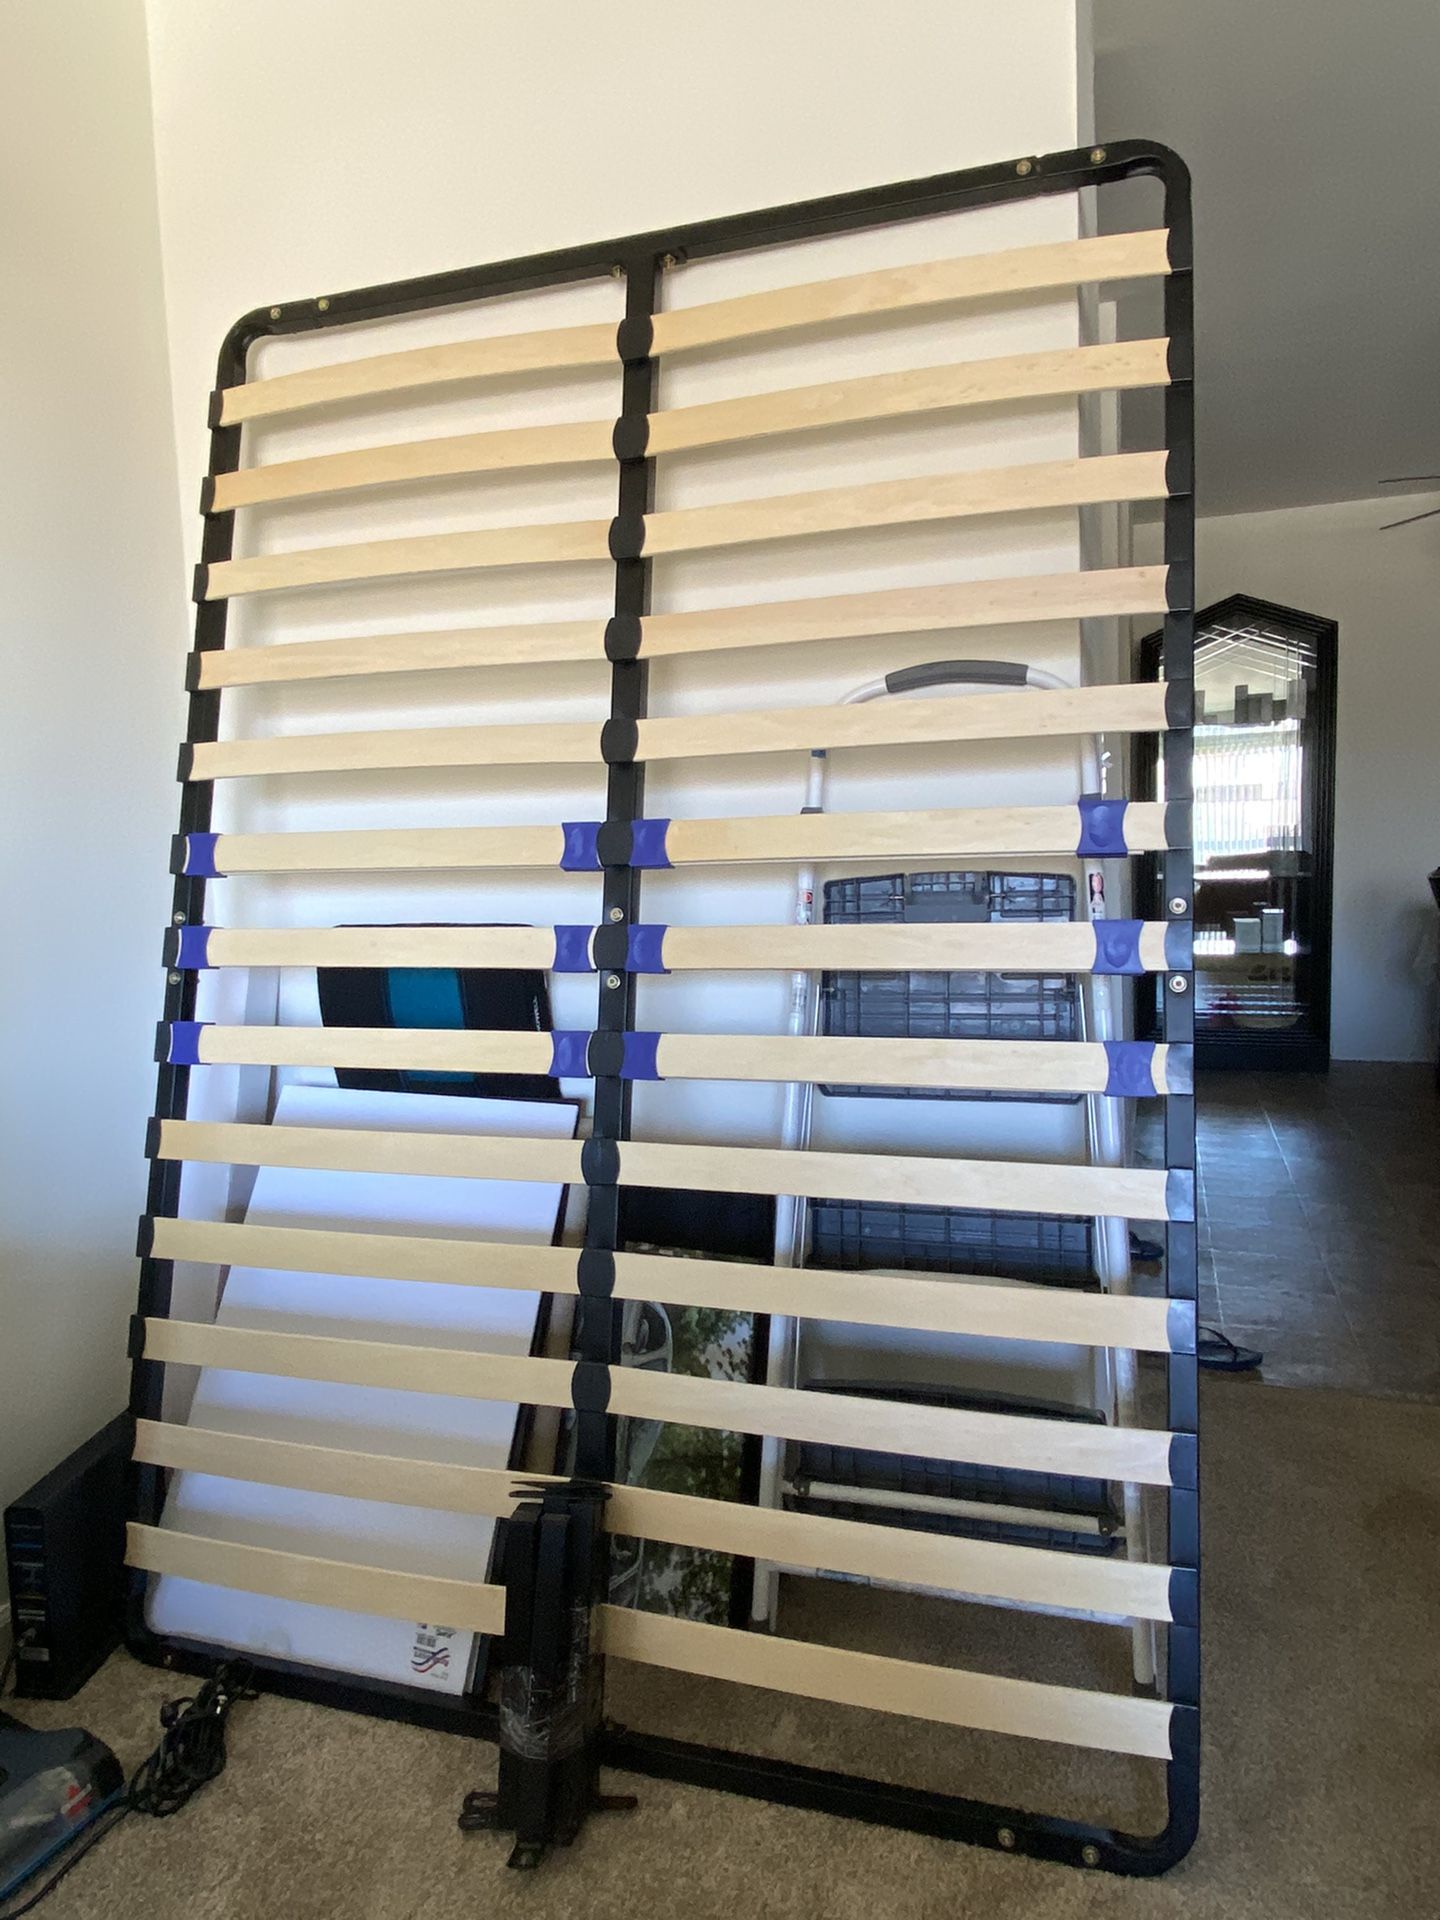 Full bed frame